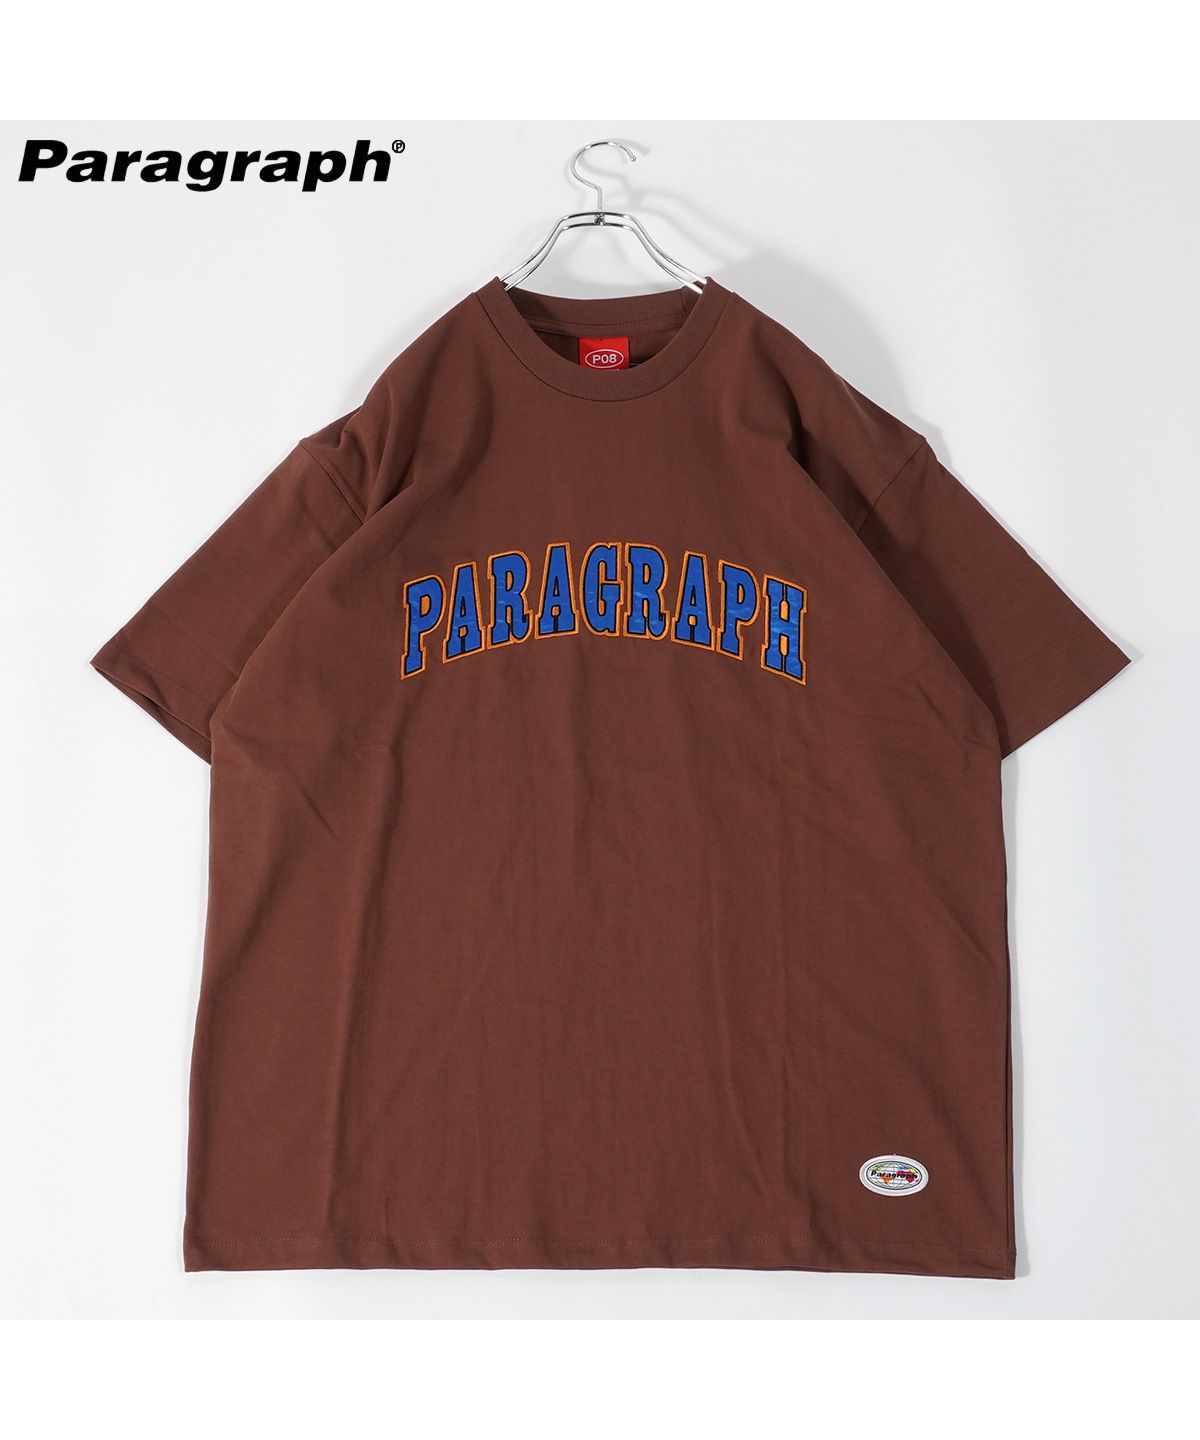 ◇Paragraph / パラグラフ Tシャツ◇ 正規品 ブランド tシャツ メンズ 